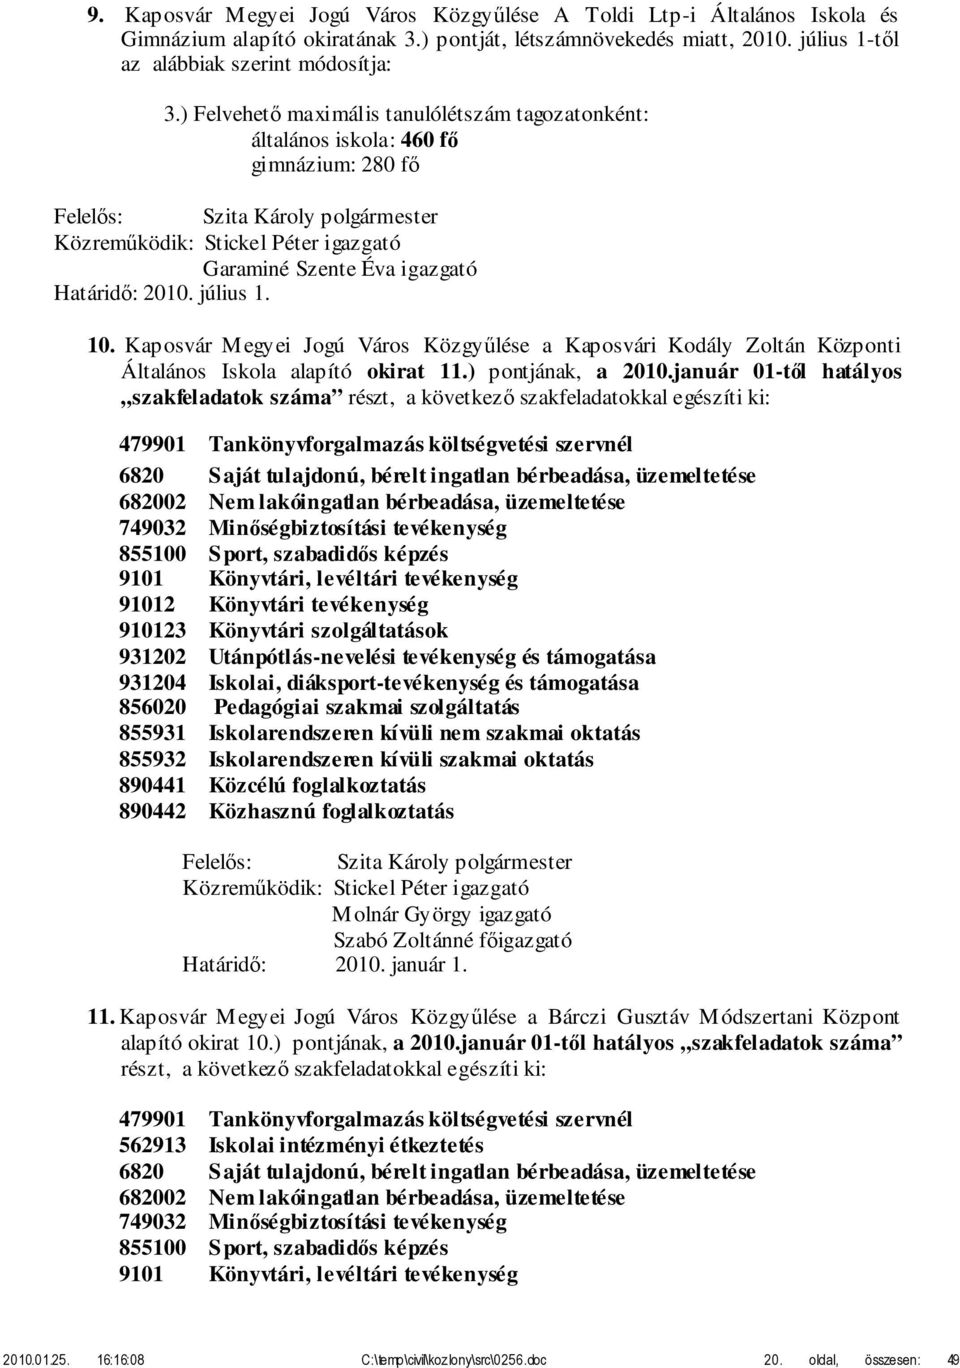 Kaposvár Megyei Jogú Város Közgyűlése a Kaposvári Kodály Zoltán Központi Általános Iskola alapító okirat 11.) pontjának, a 2010.